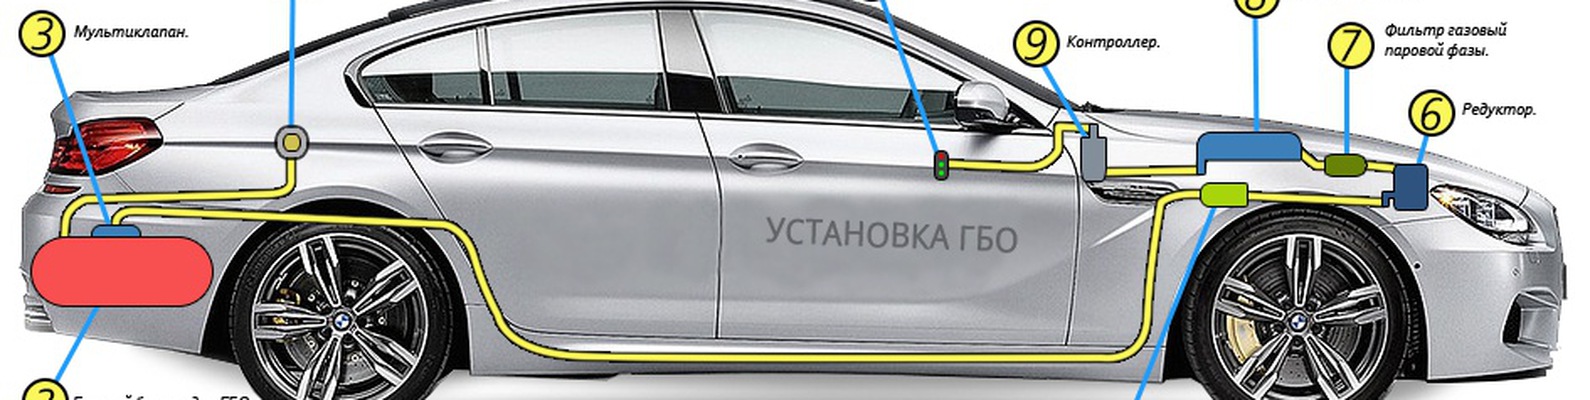 Как установить газовое оборудования на автомобиль? 8 практических советов | auto-gl.ru